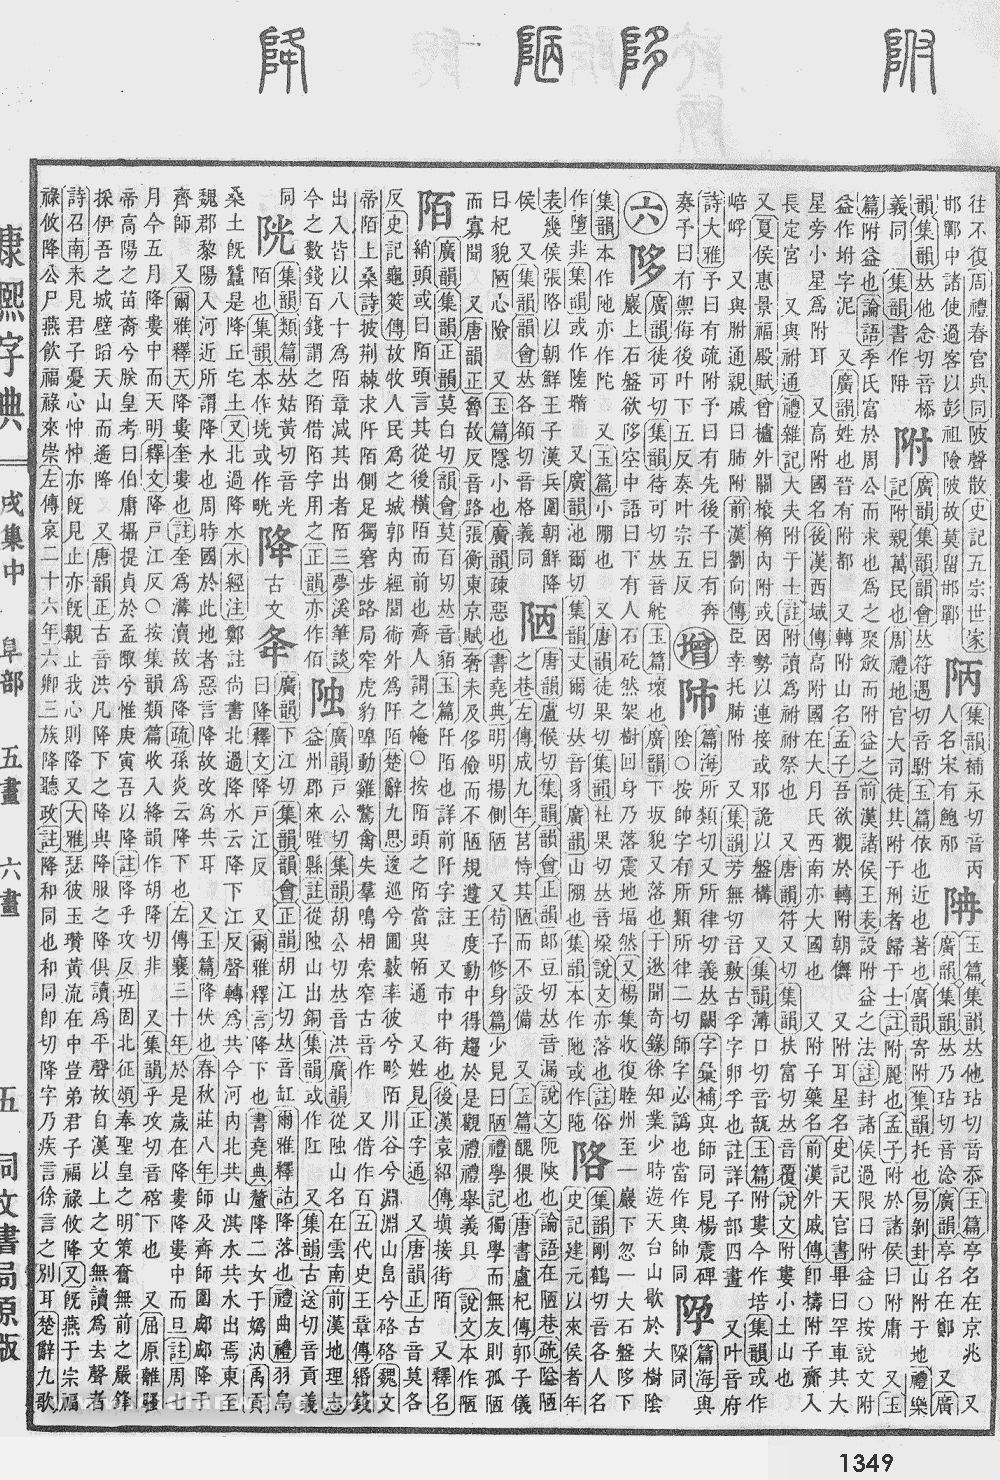 康熙字典掃描版第1349頁